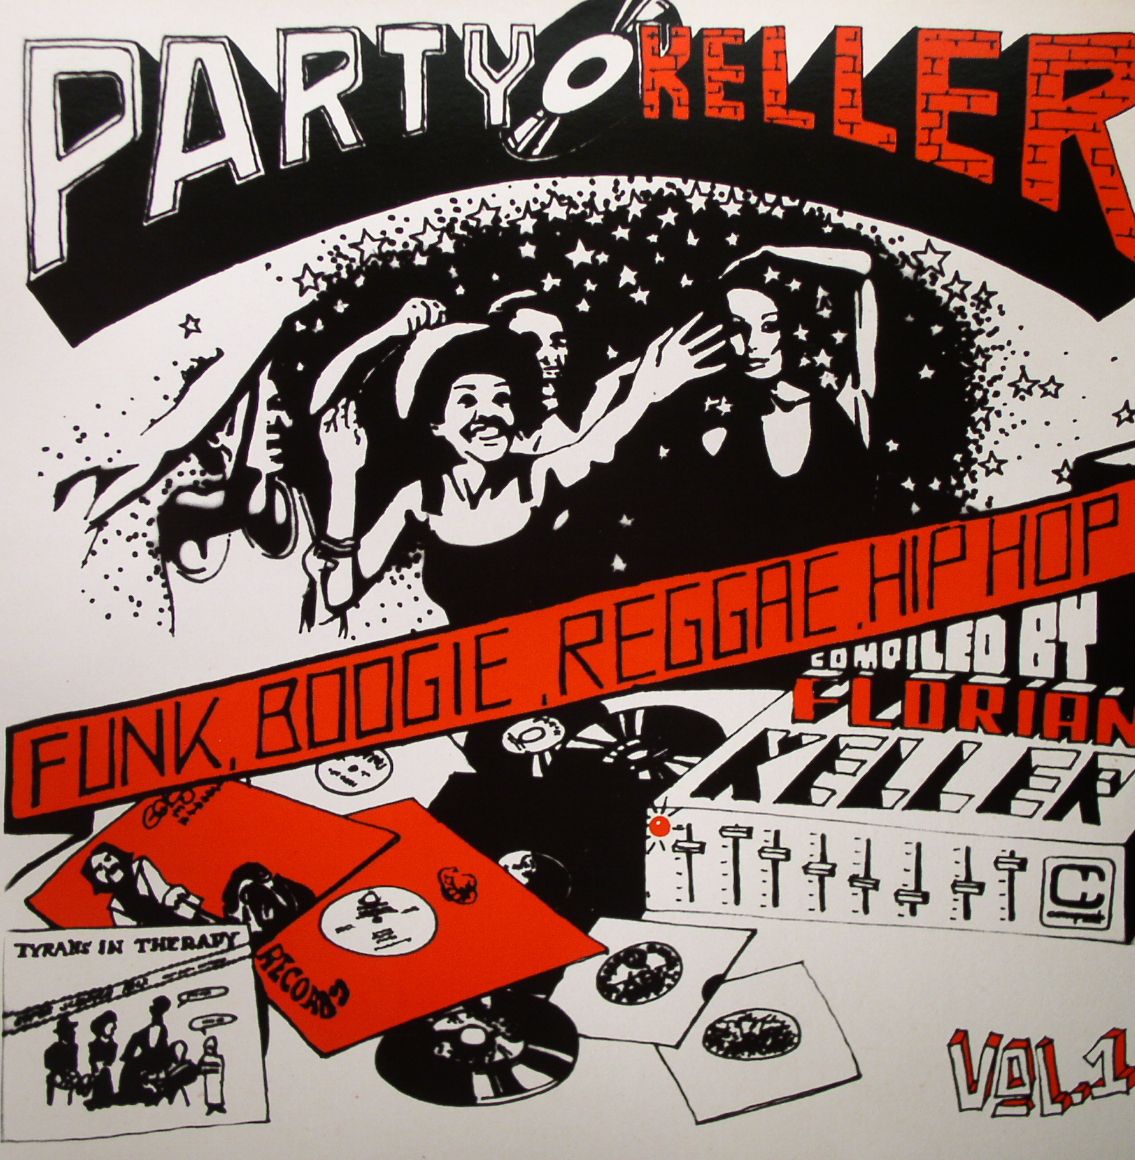 VARIOUS - Party Keller Vol 1 (Funk Boogie Reggae Hip Hop Compiled By Florian Keller)